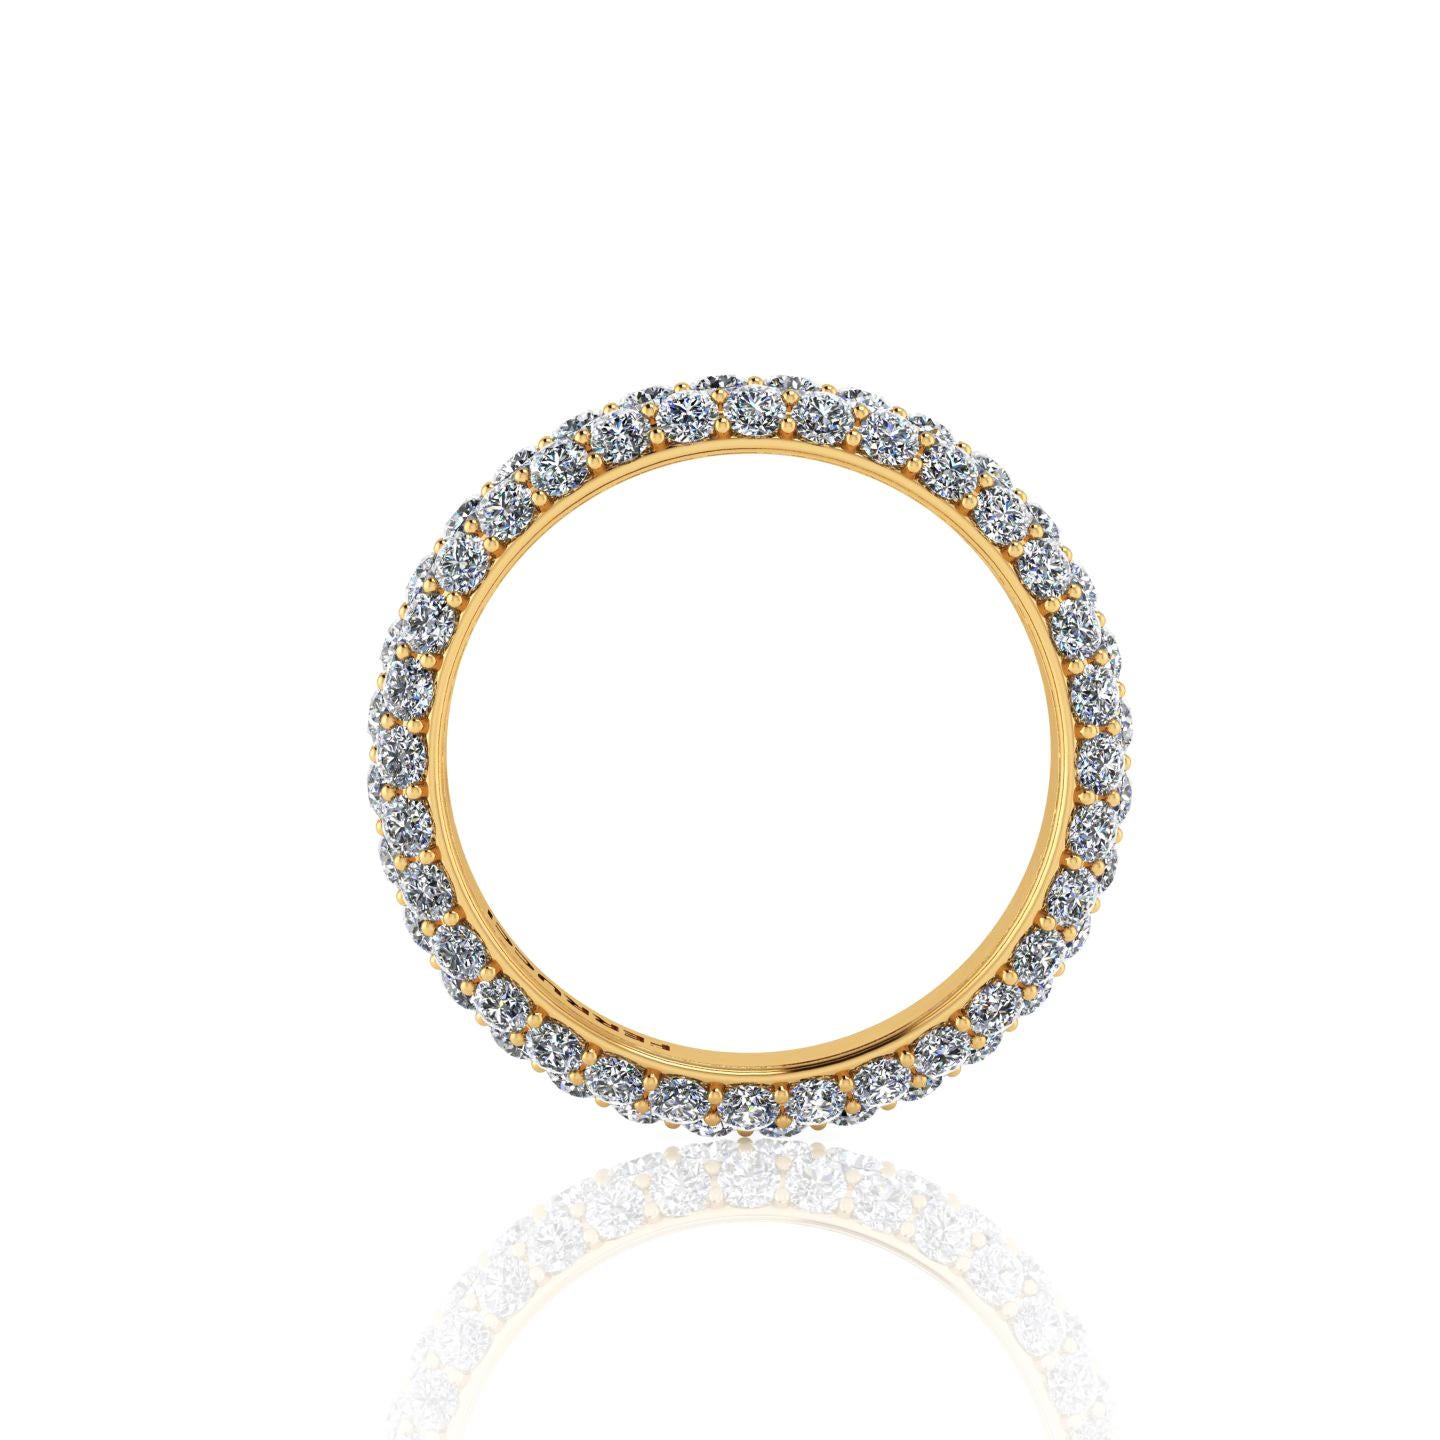 Round Cut 2.00 Carat White Diamond Pave Ring in 18 Karat Yellow Gold